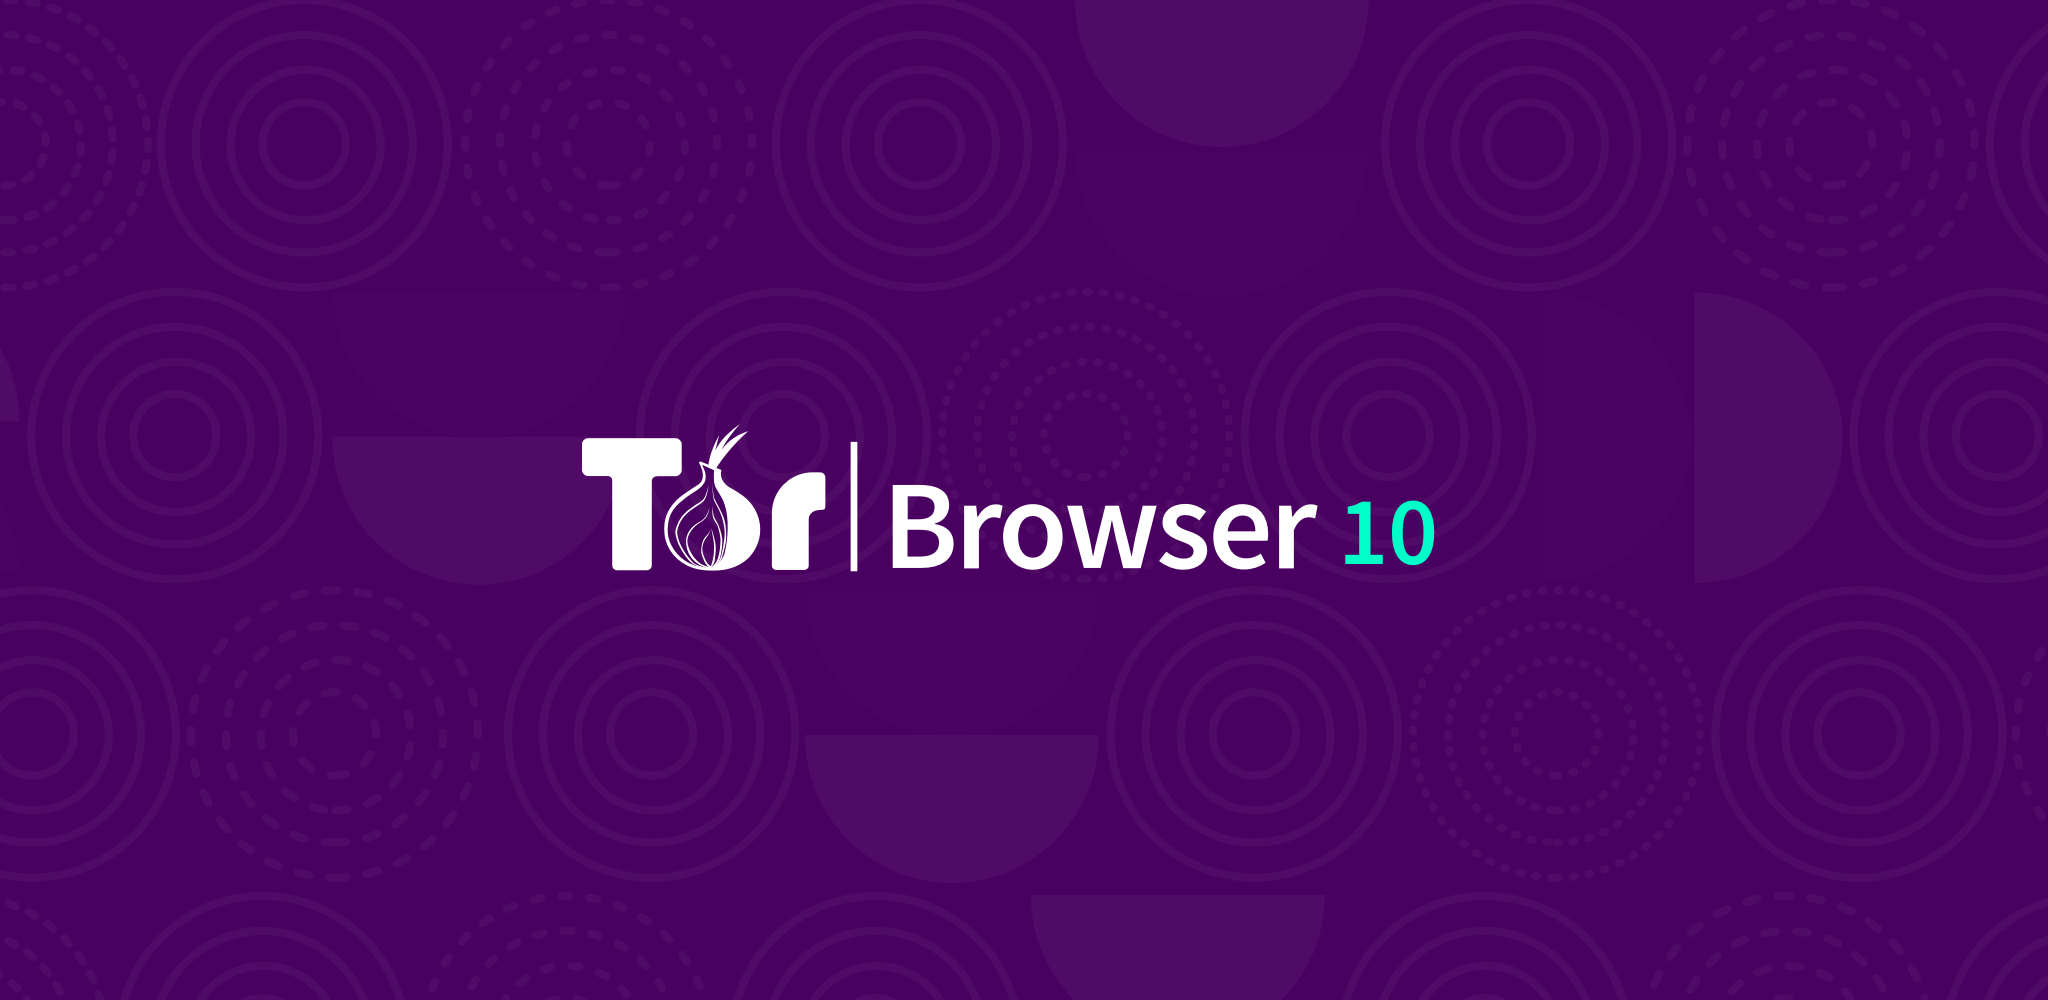 Загрузки tor browser как настроить тор браузер на пк гидра